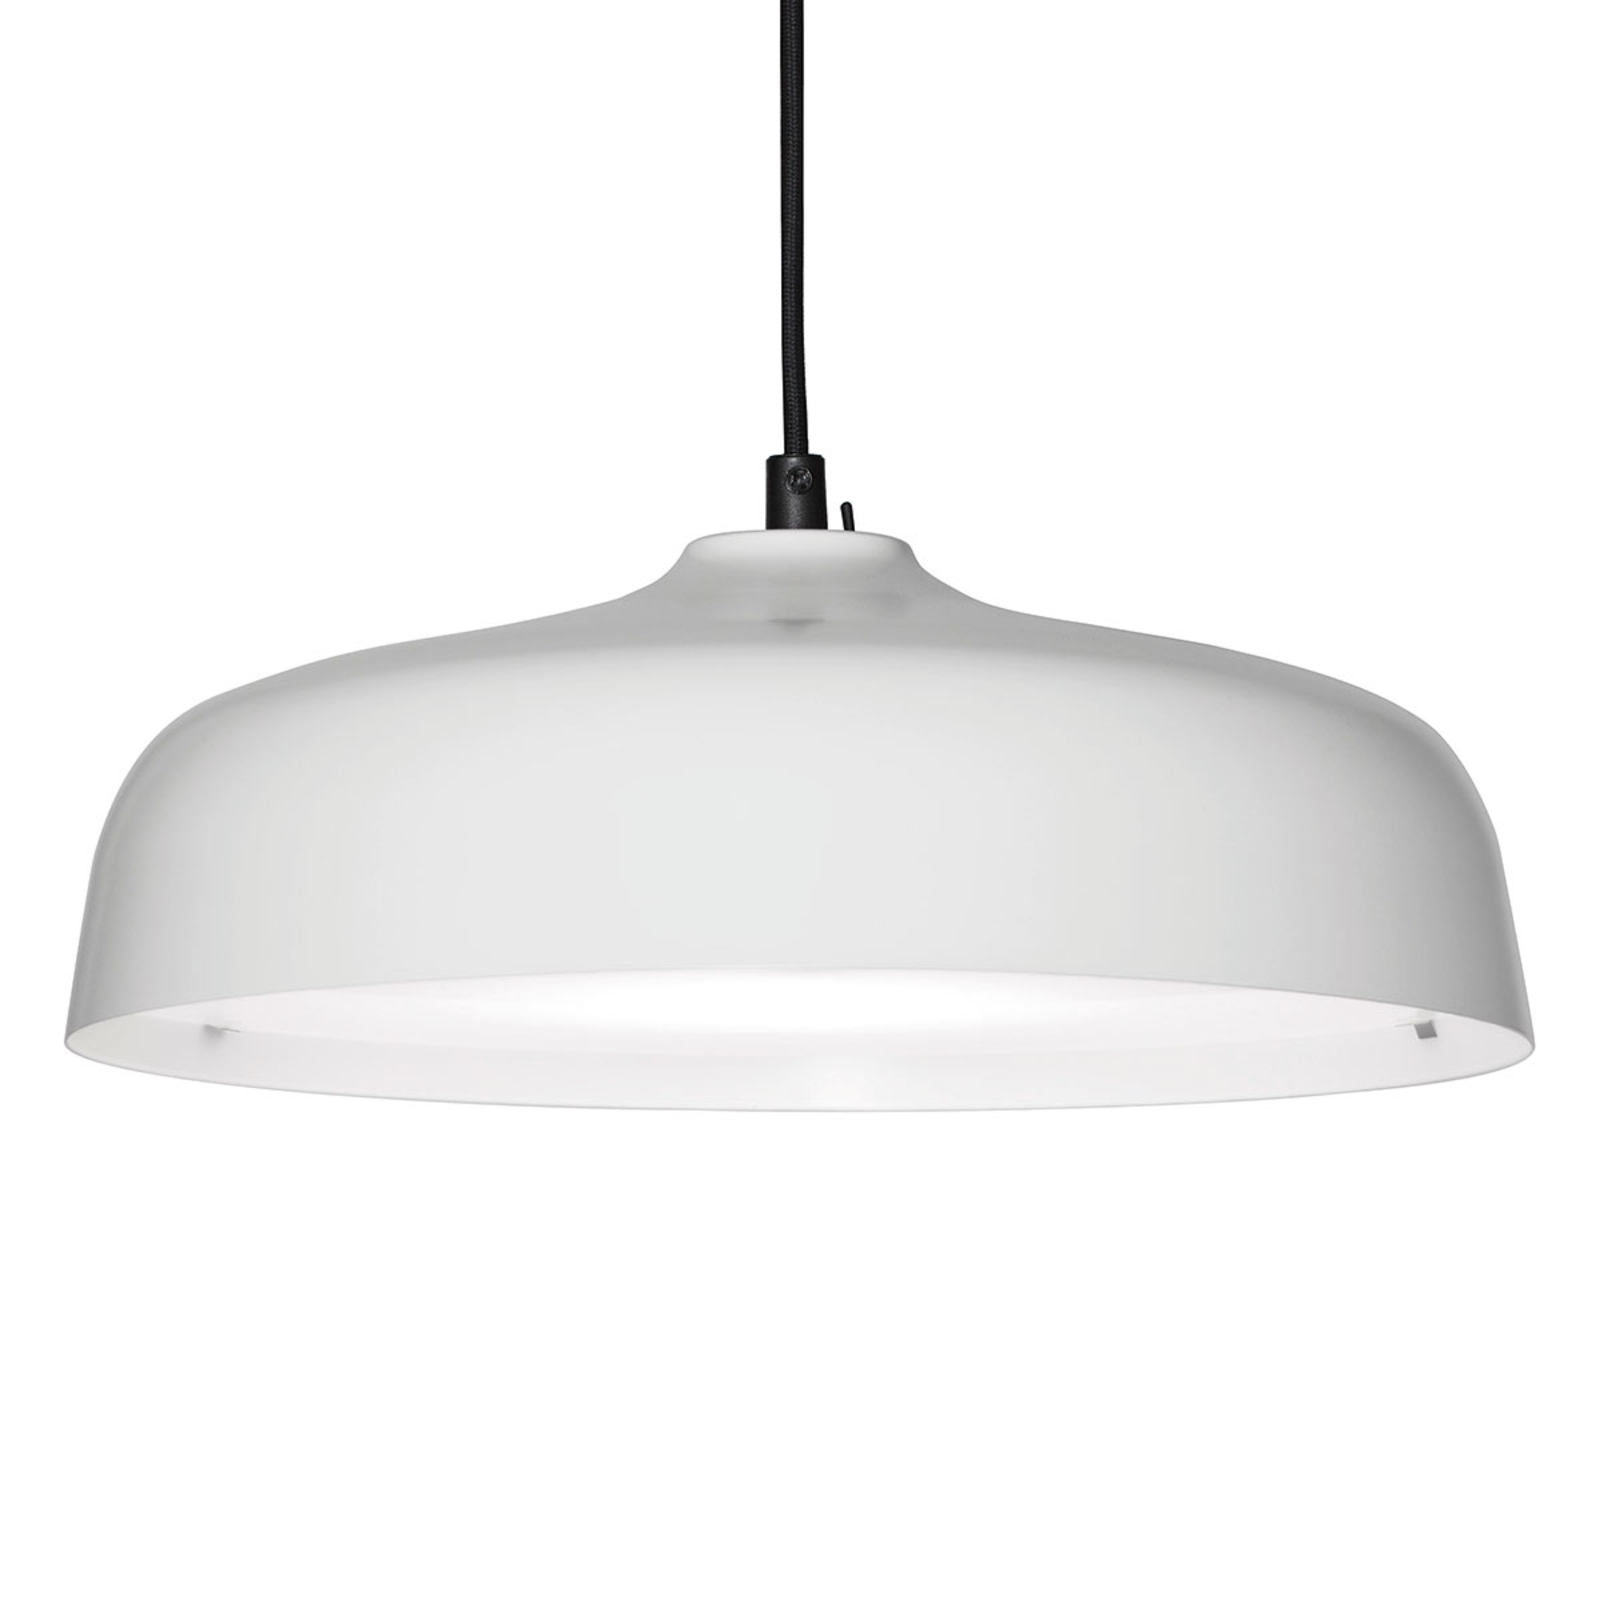 Innolux Candeo Air lámpara colgante LED blanca